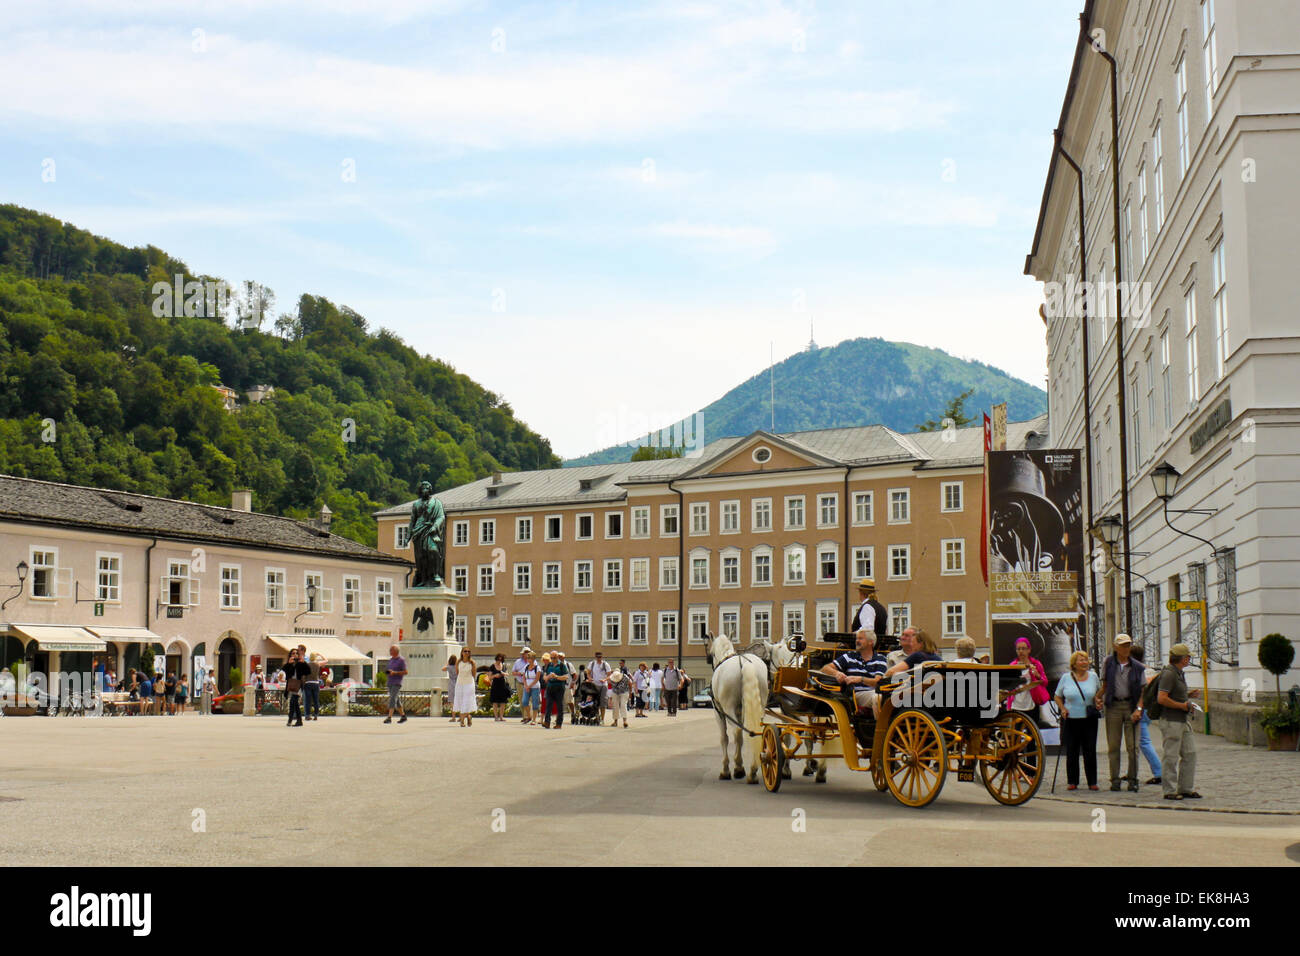 SALZBURG - 3 de julio: Turistas de excursión en una de las plazas más famosas de Austria - Mozartplatz el 3 de julio de 2013 en Salzburgo. Foto de stock